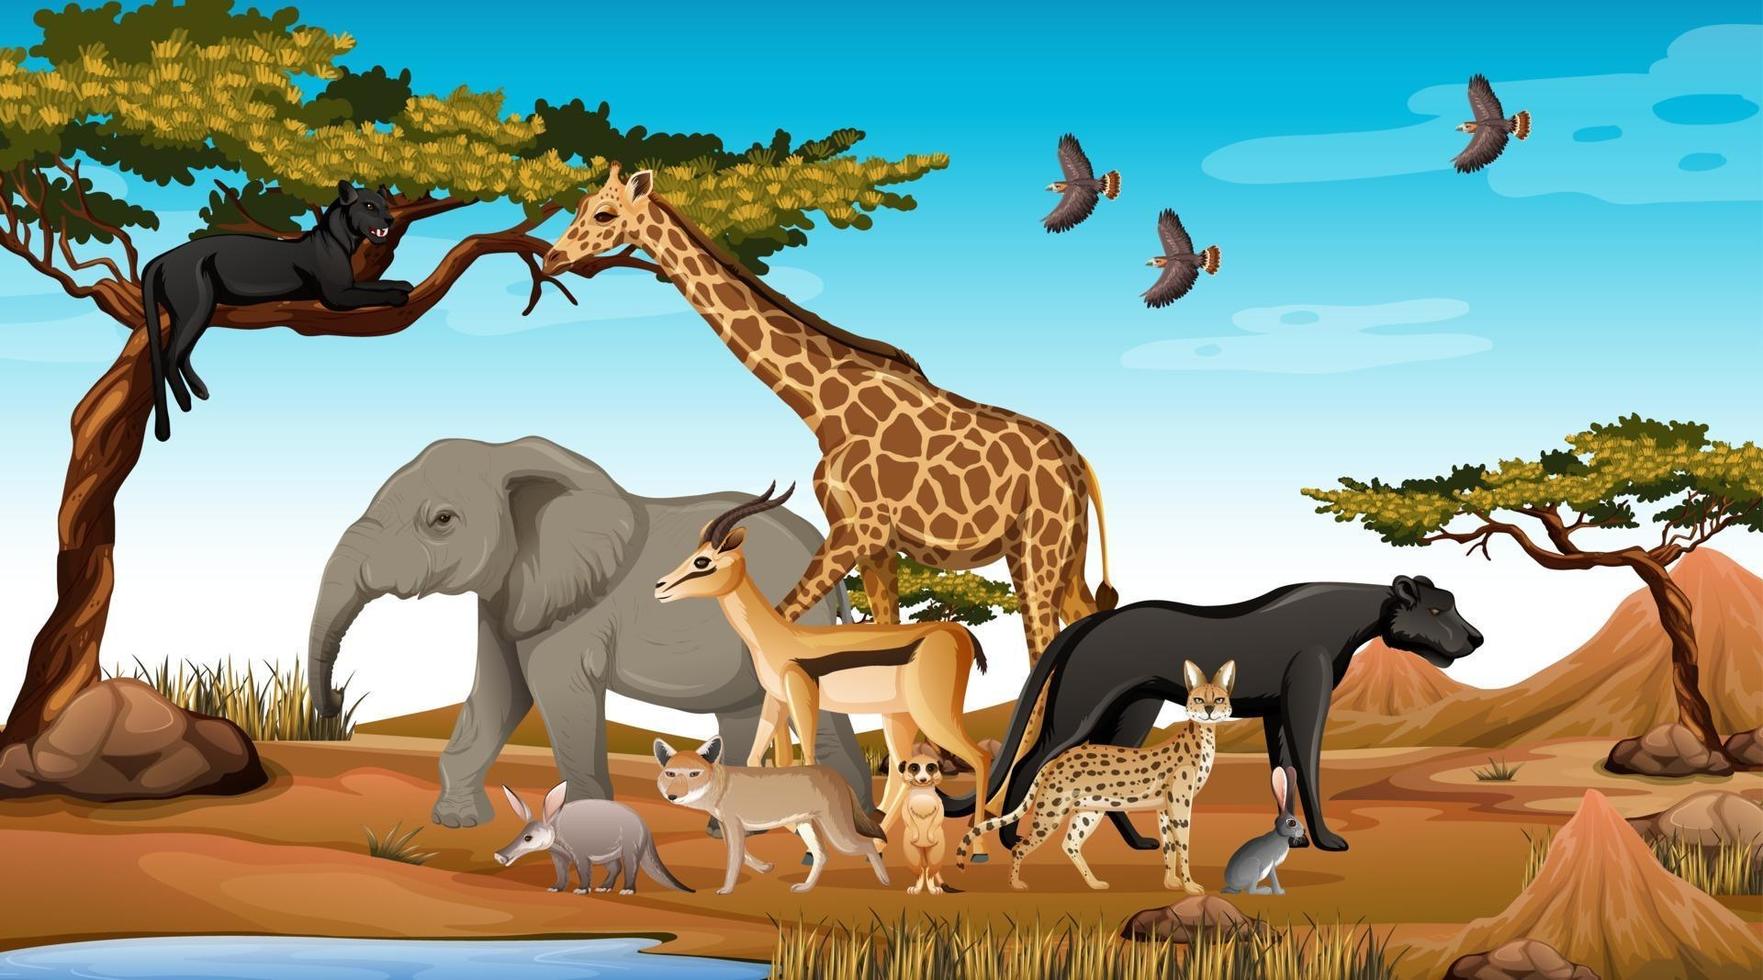 grupp av vilda afrikanska djur i skogen scen vektor